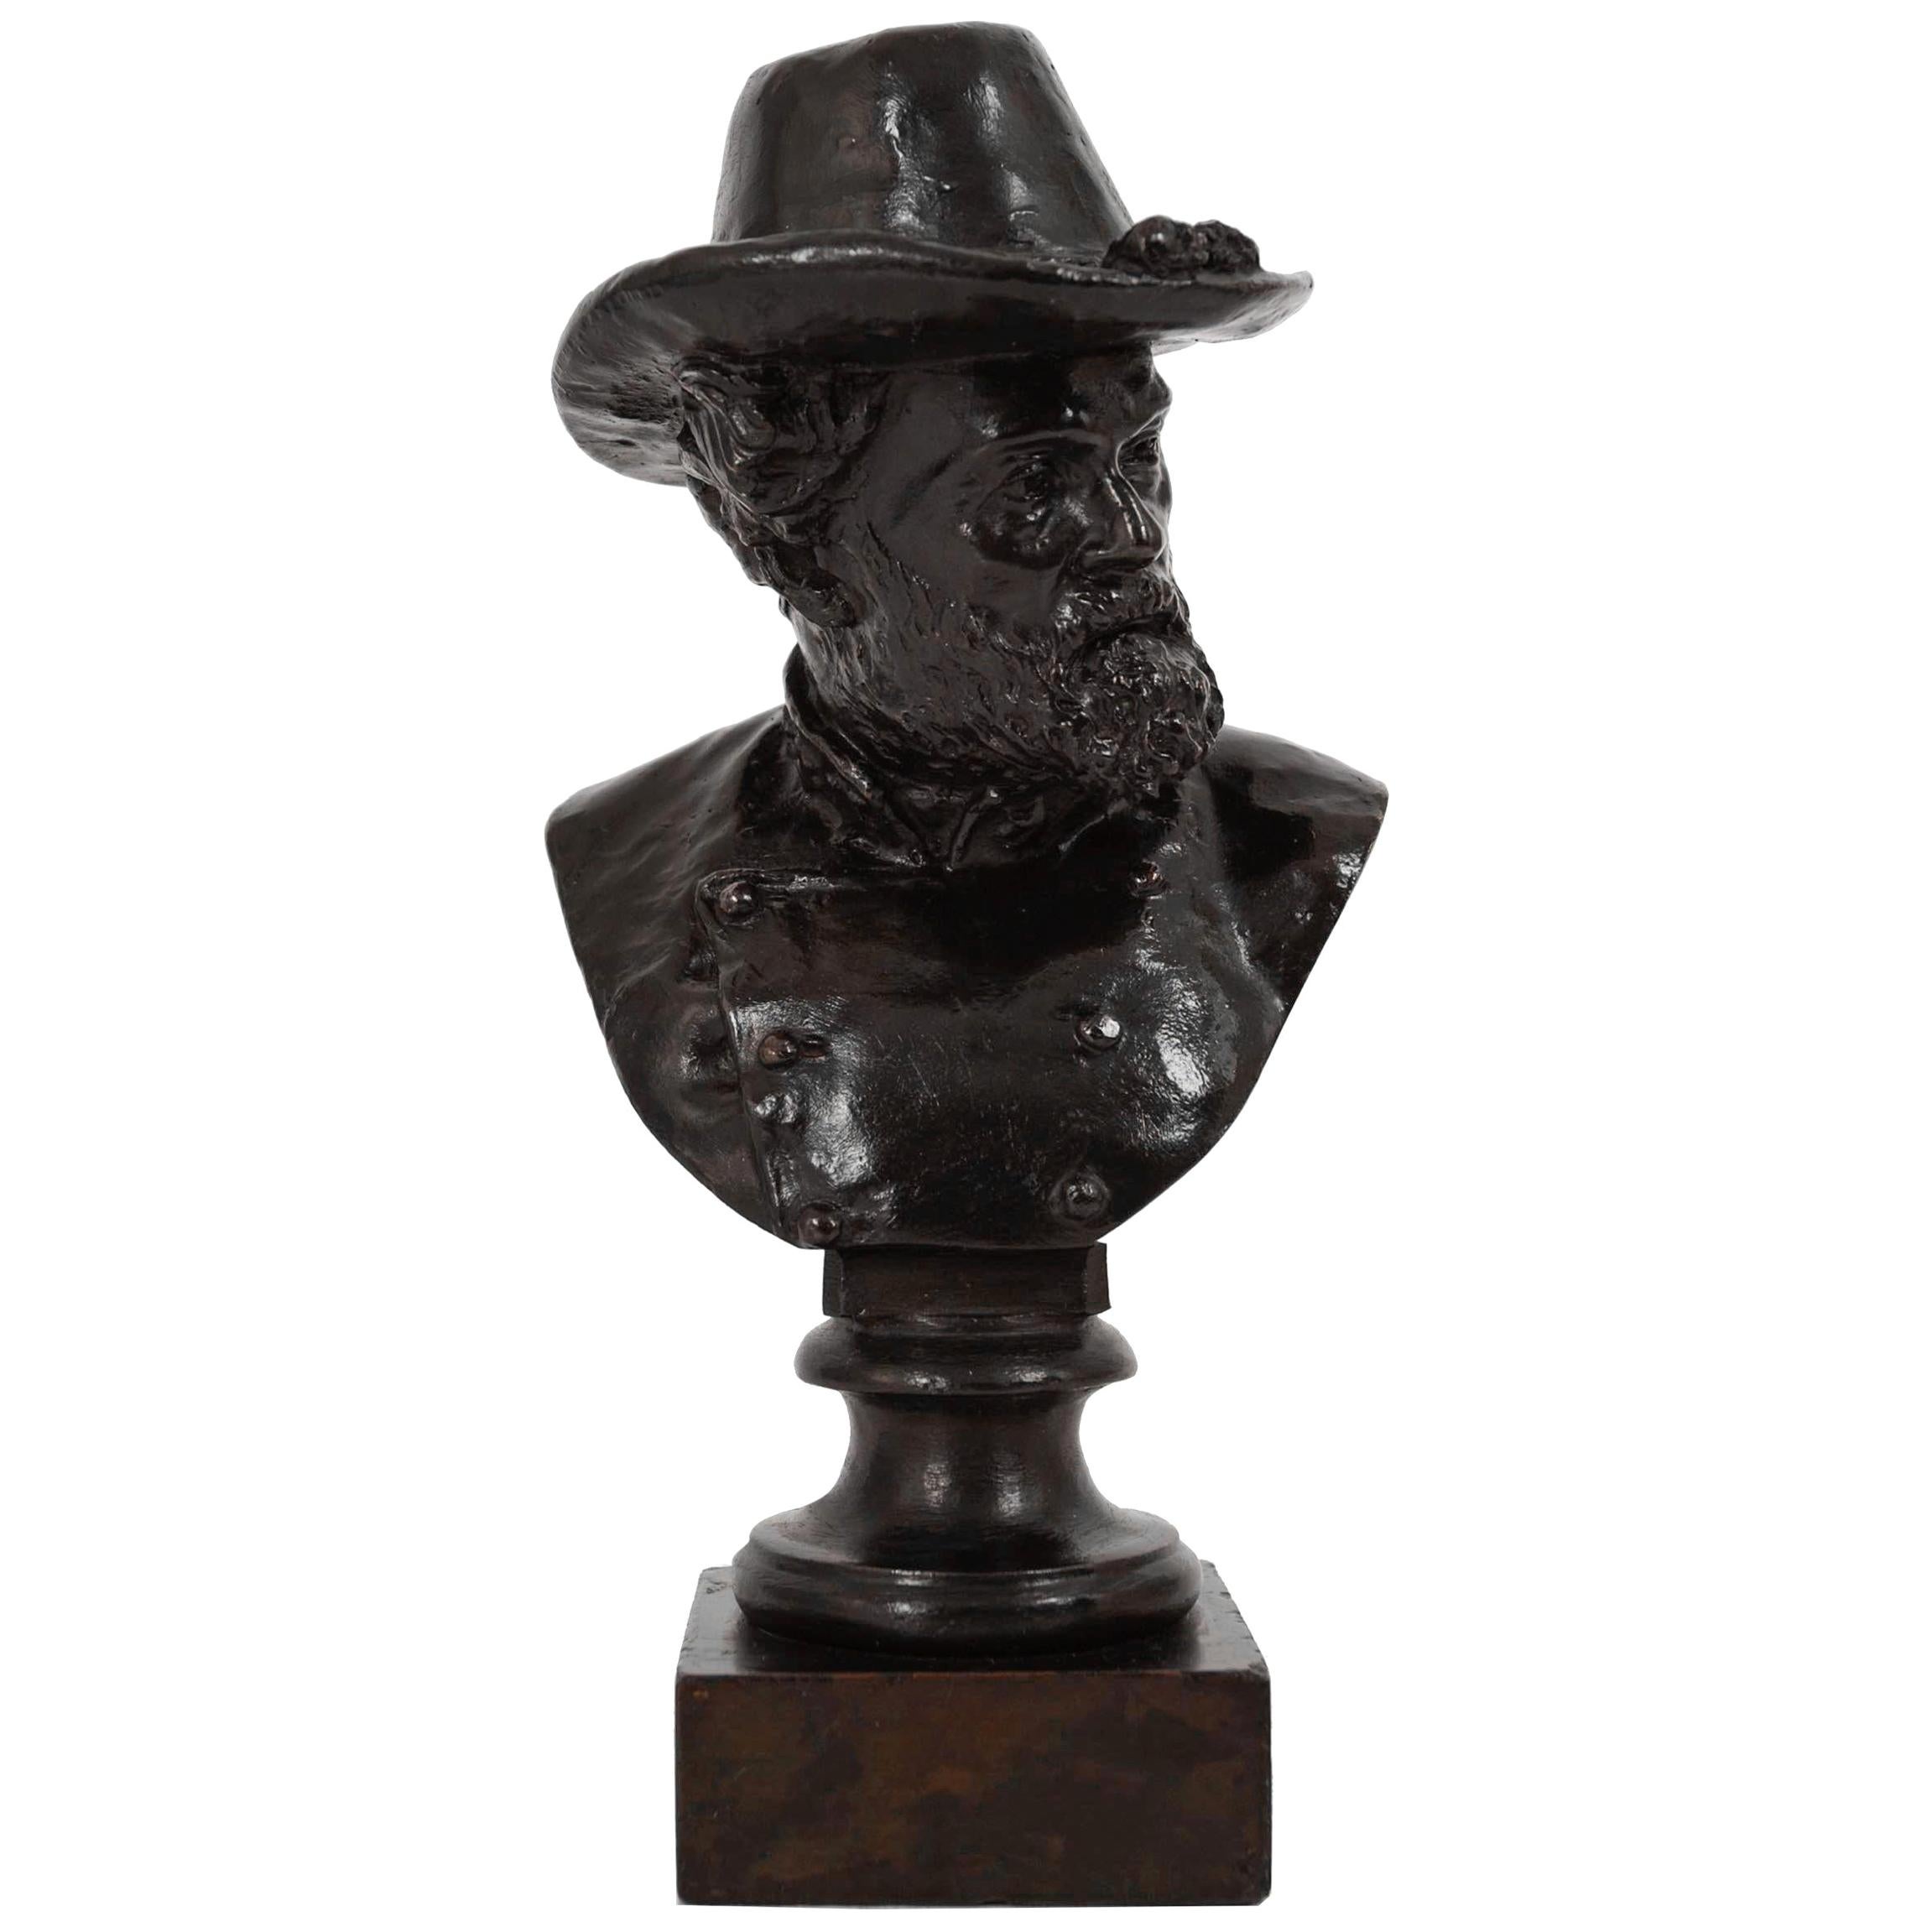 Bronze Sculpture "Bust of Robert E. Lee" by Moses Ezekiel